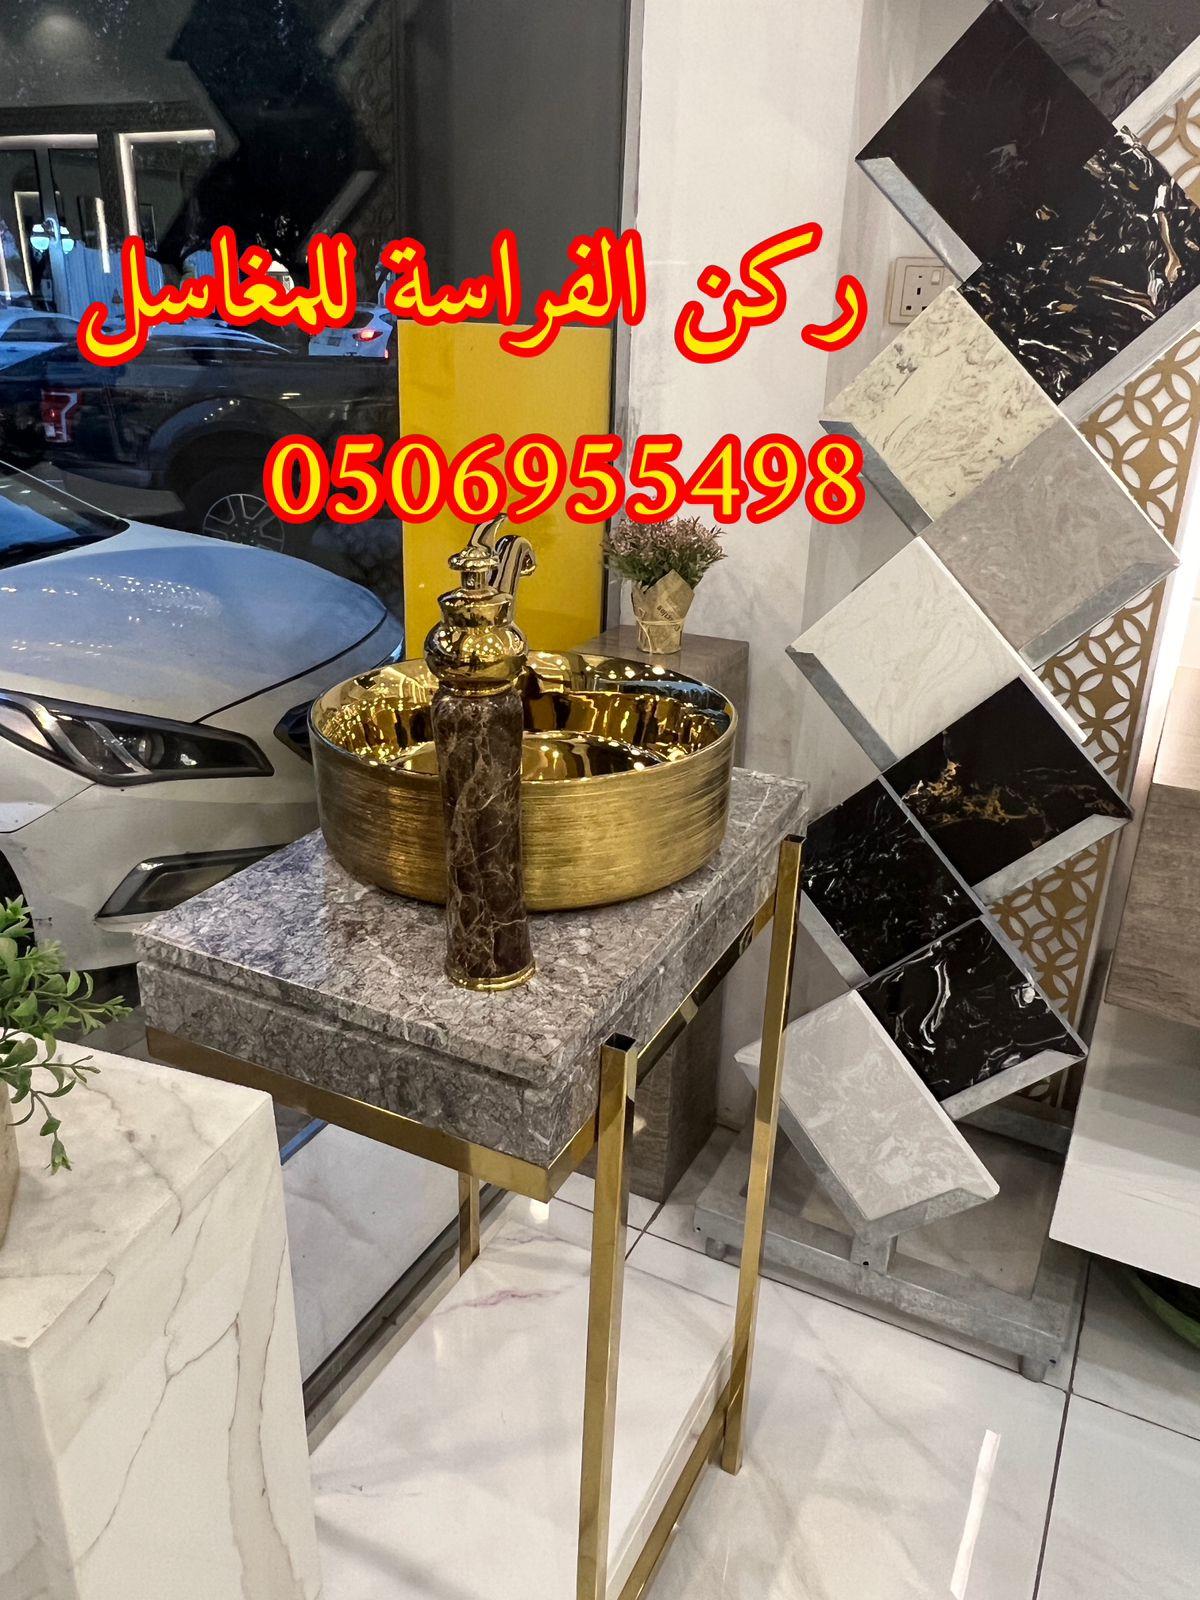 ديكورات مغاسل حمامات رخام في الرياض,0506955498 638373669